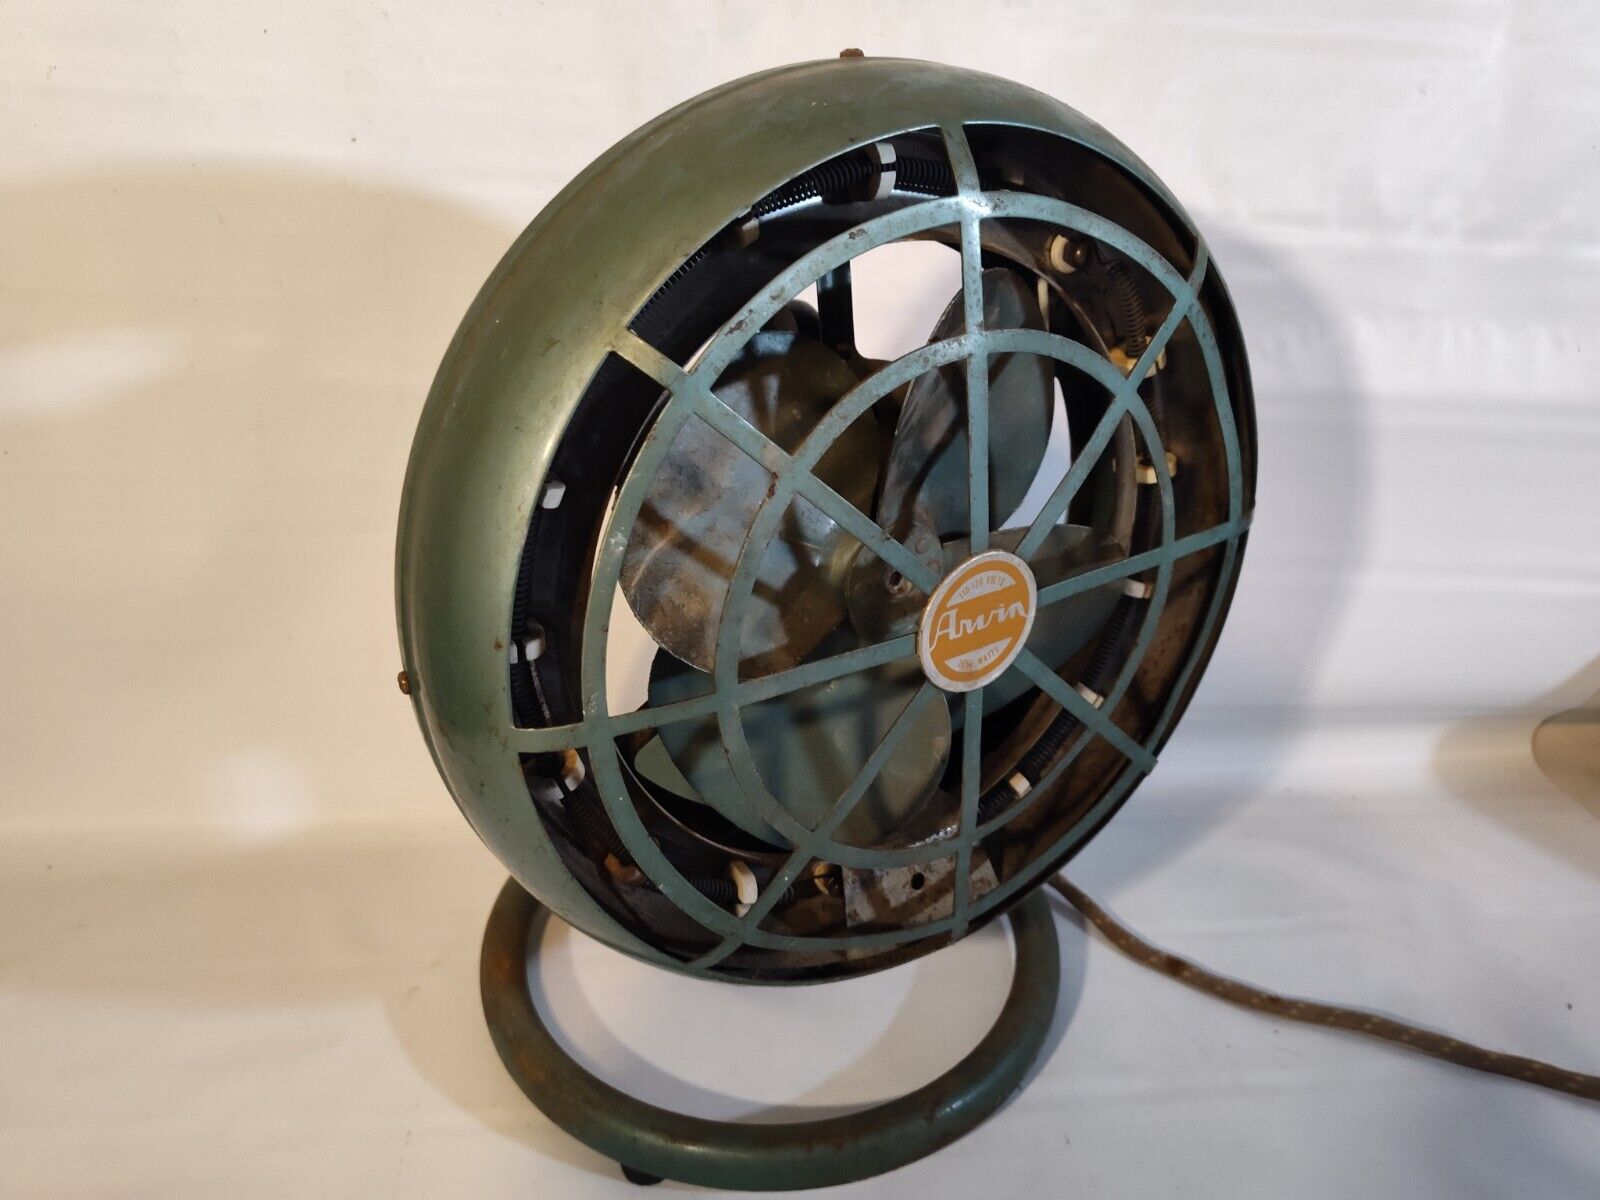 Vintage 1950s Arvin Model 5130 Fan / Heater - Tested